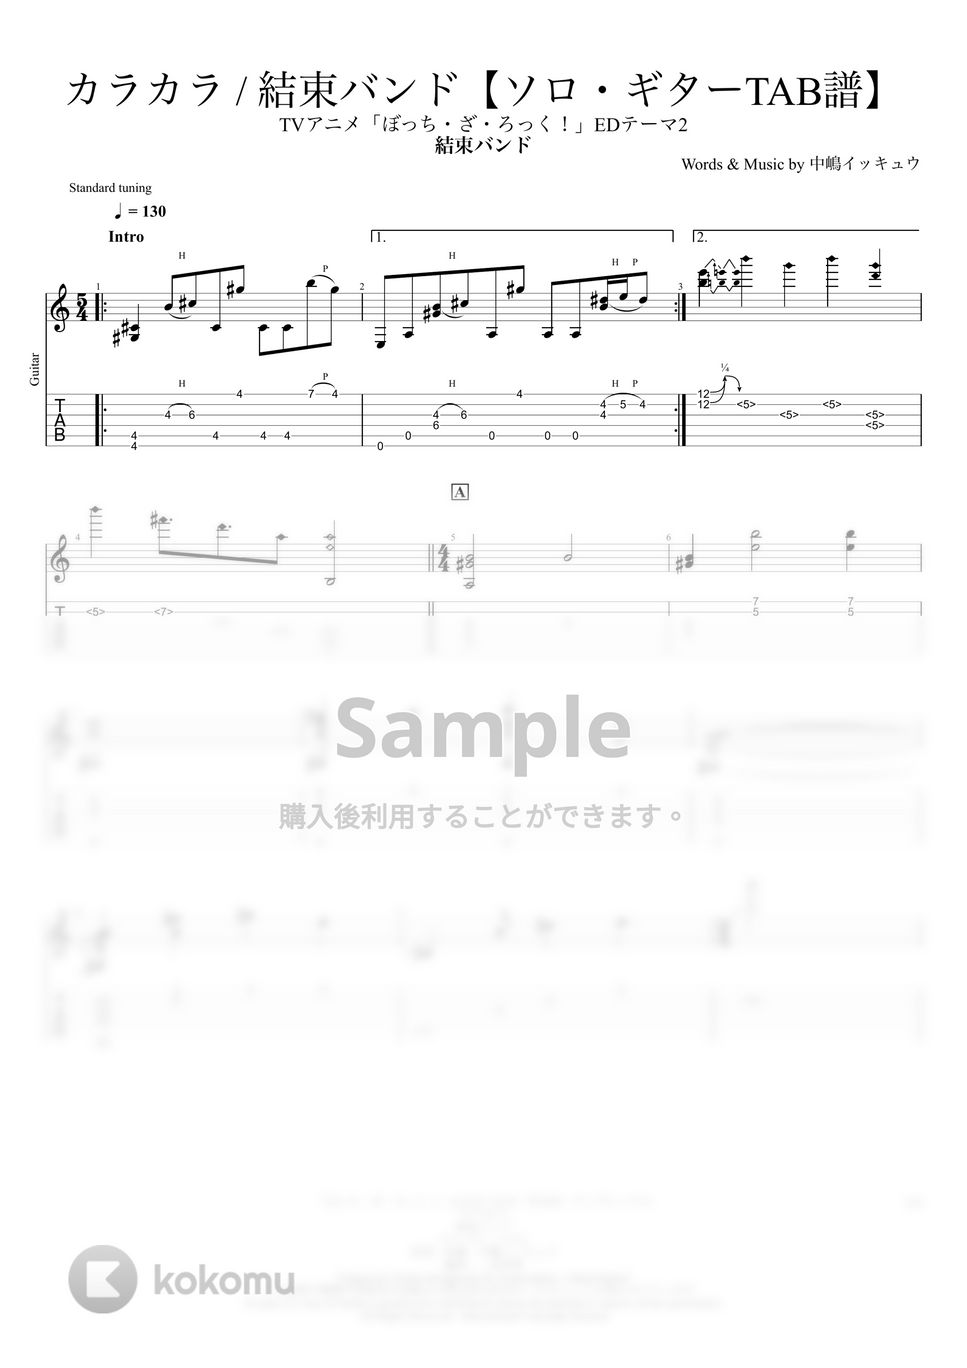 結束バンド - カラカラ【ソロギターTAB譜】 by 伊田 マナブ